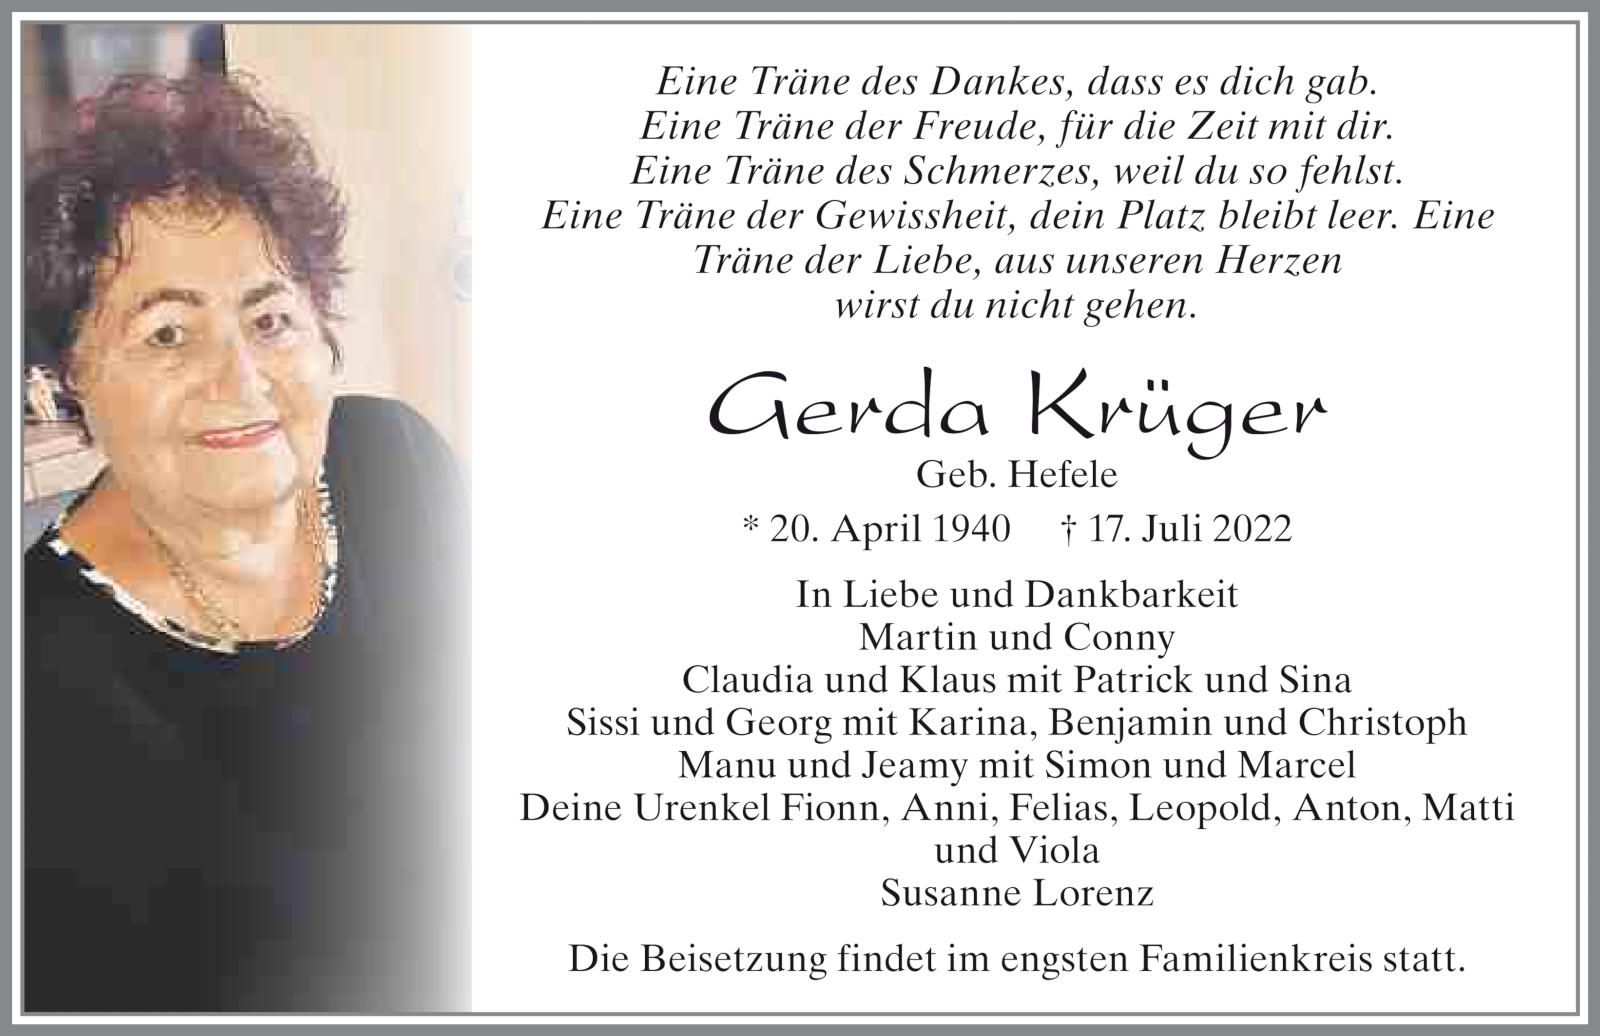 Gerda Krueger